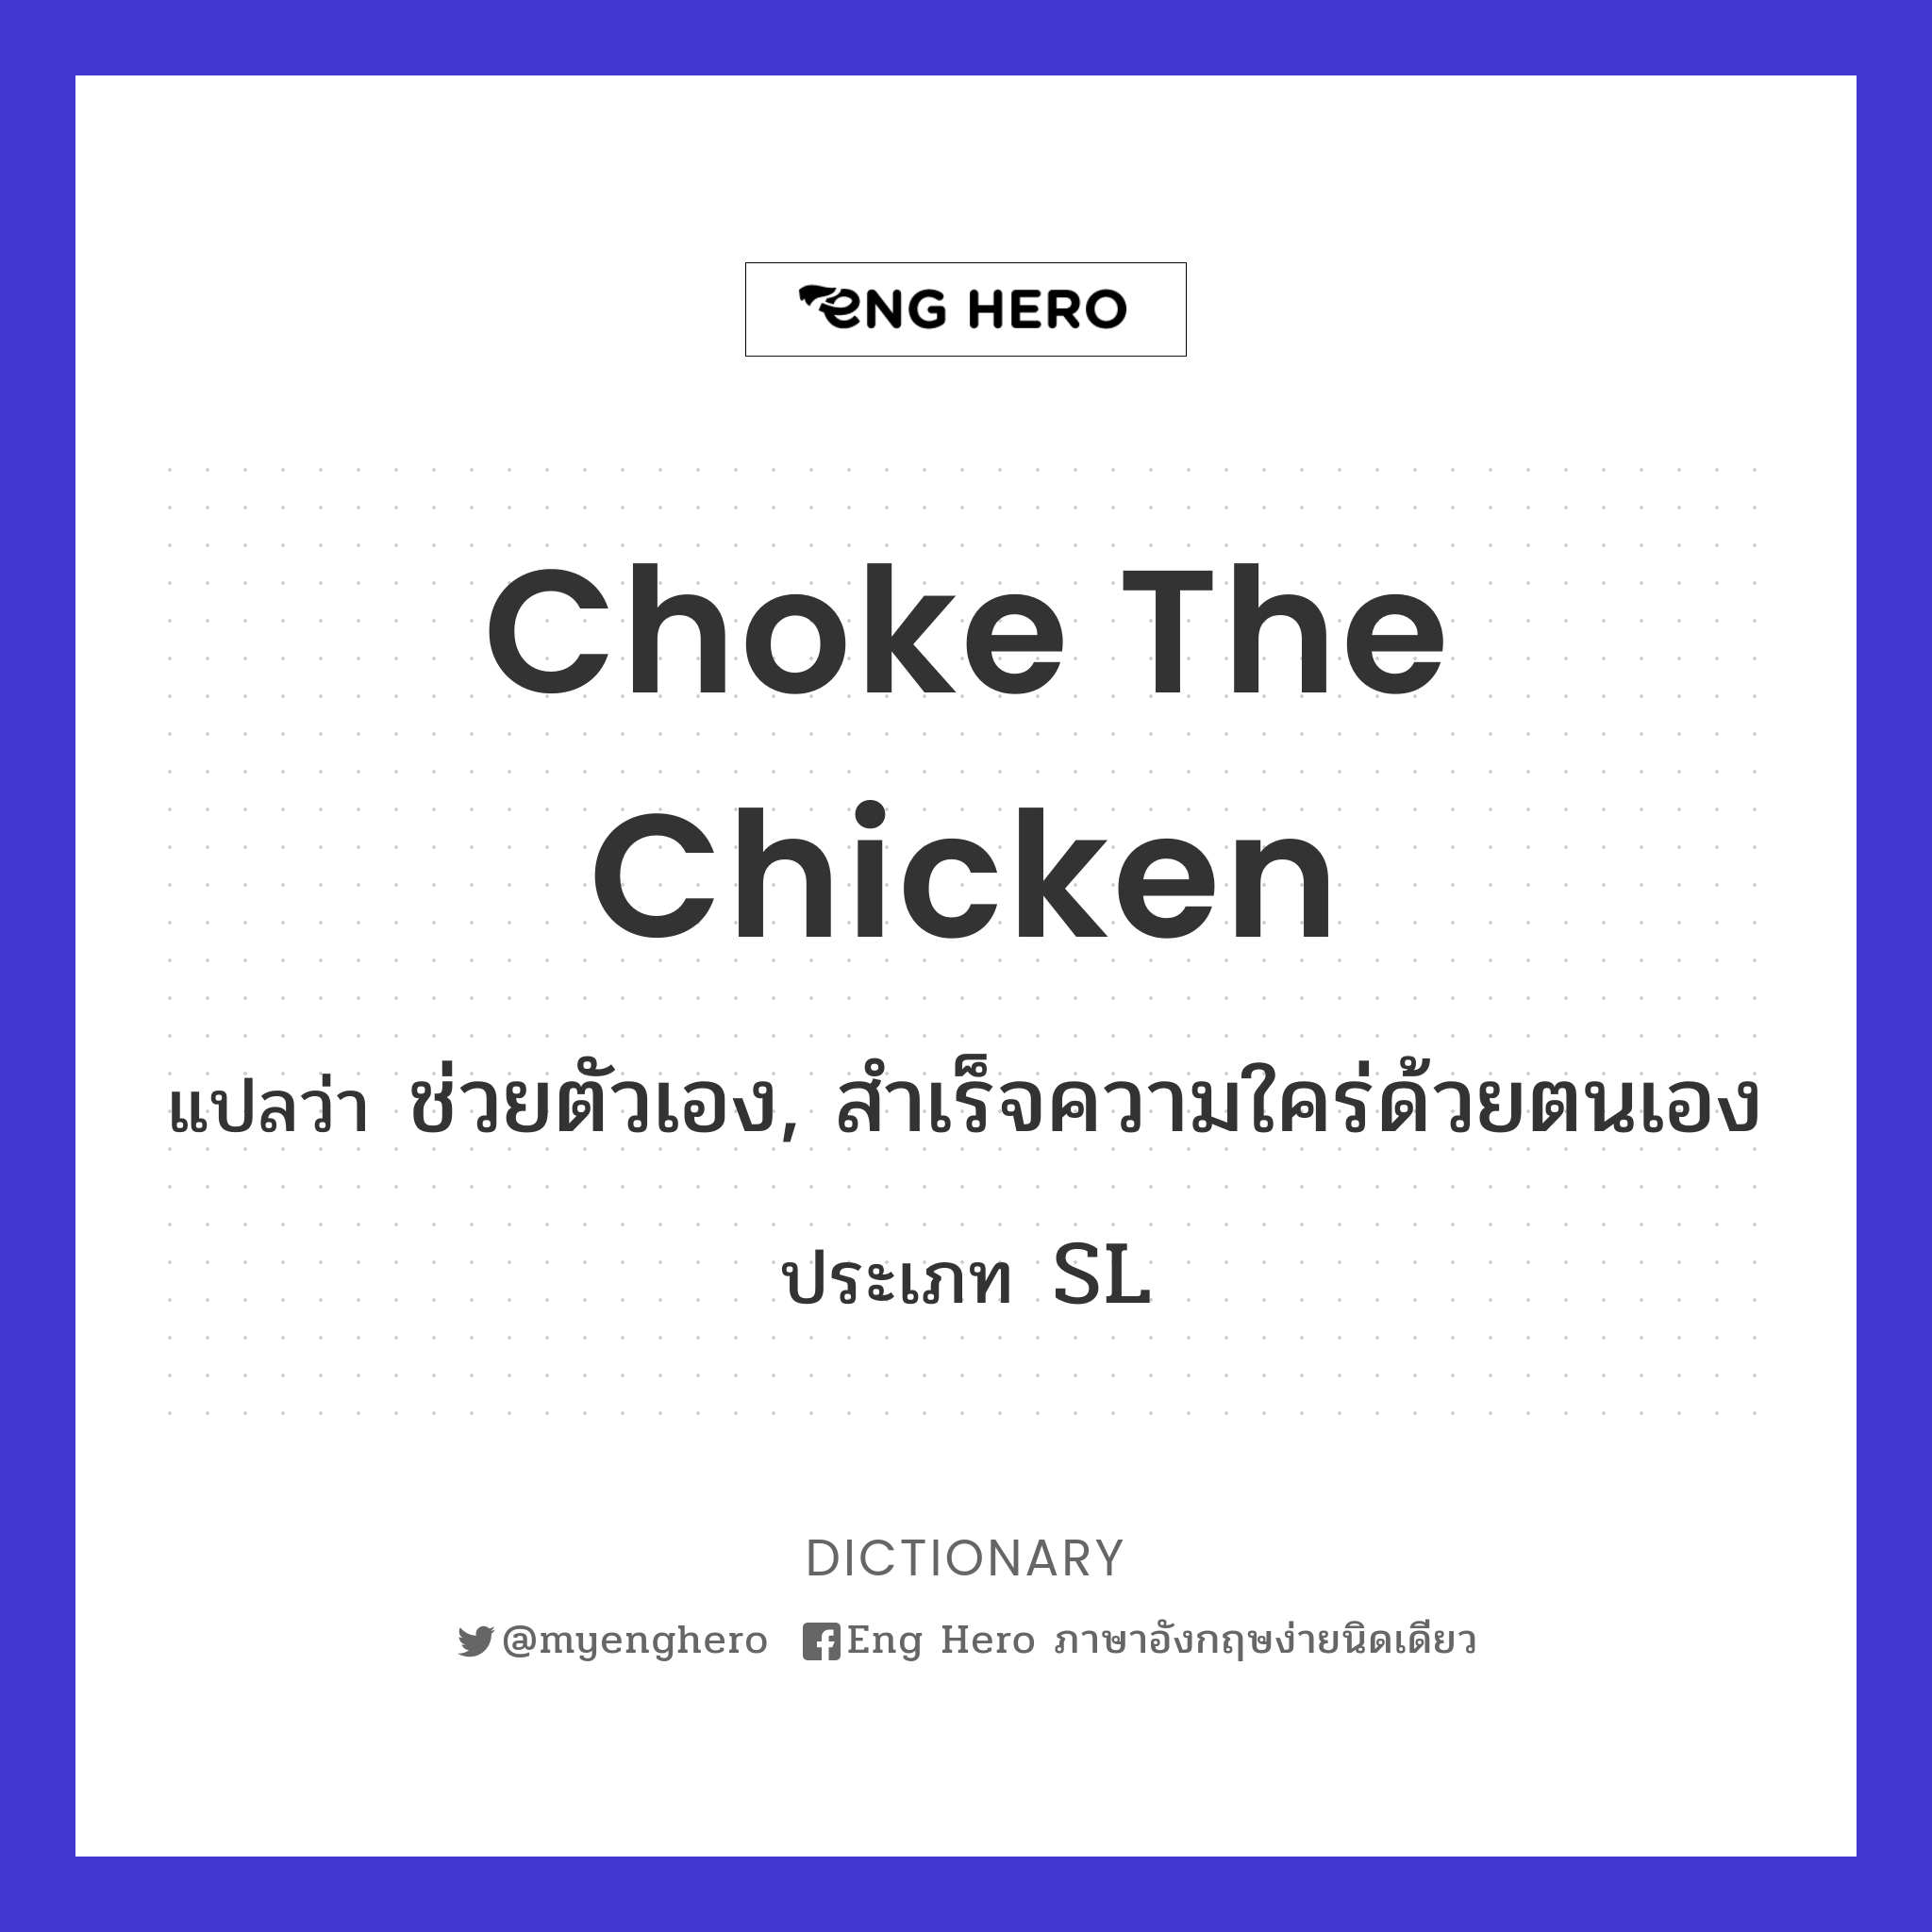 Choke The Chicken แปลว่า ช่วยตัวเอง, สำเร็จความใคร่ด้วยตนเอง | Eng Hero  เรียนภาษาอังกฤษ ออนไลน์ ฟรี